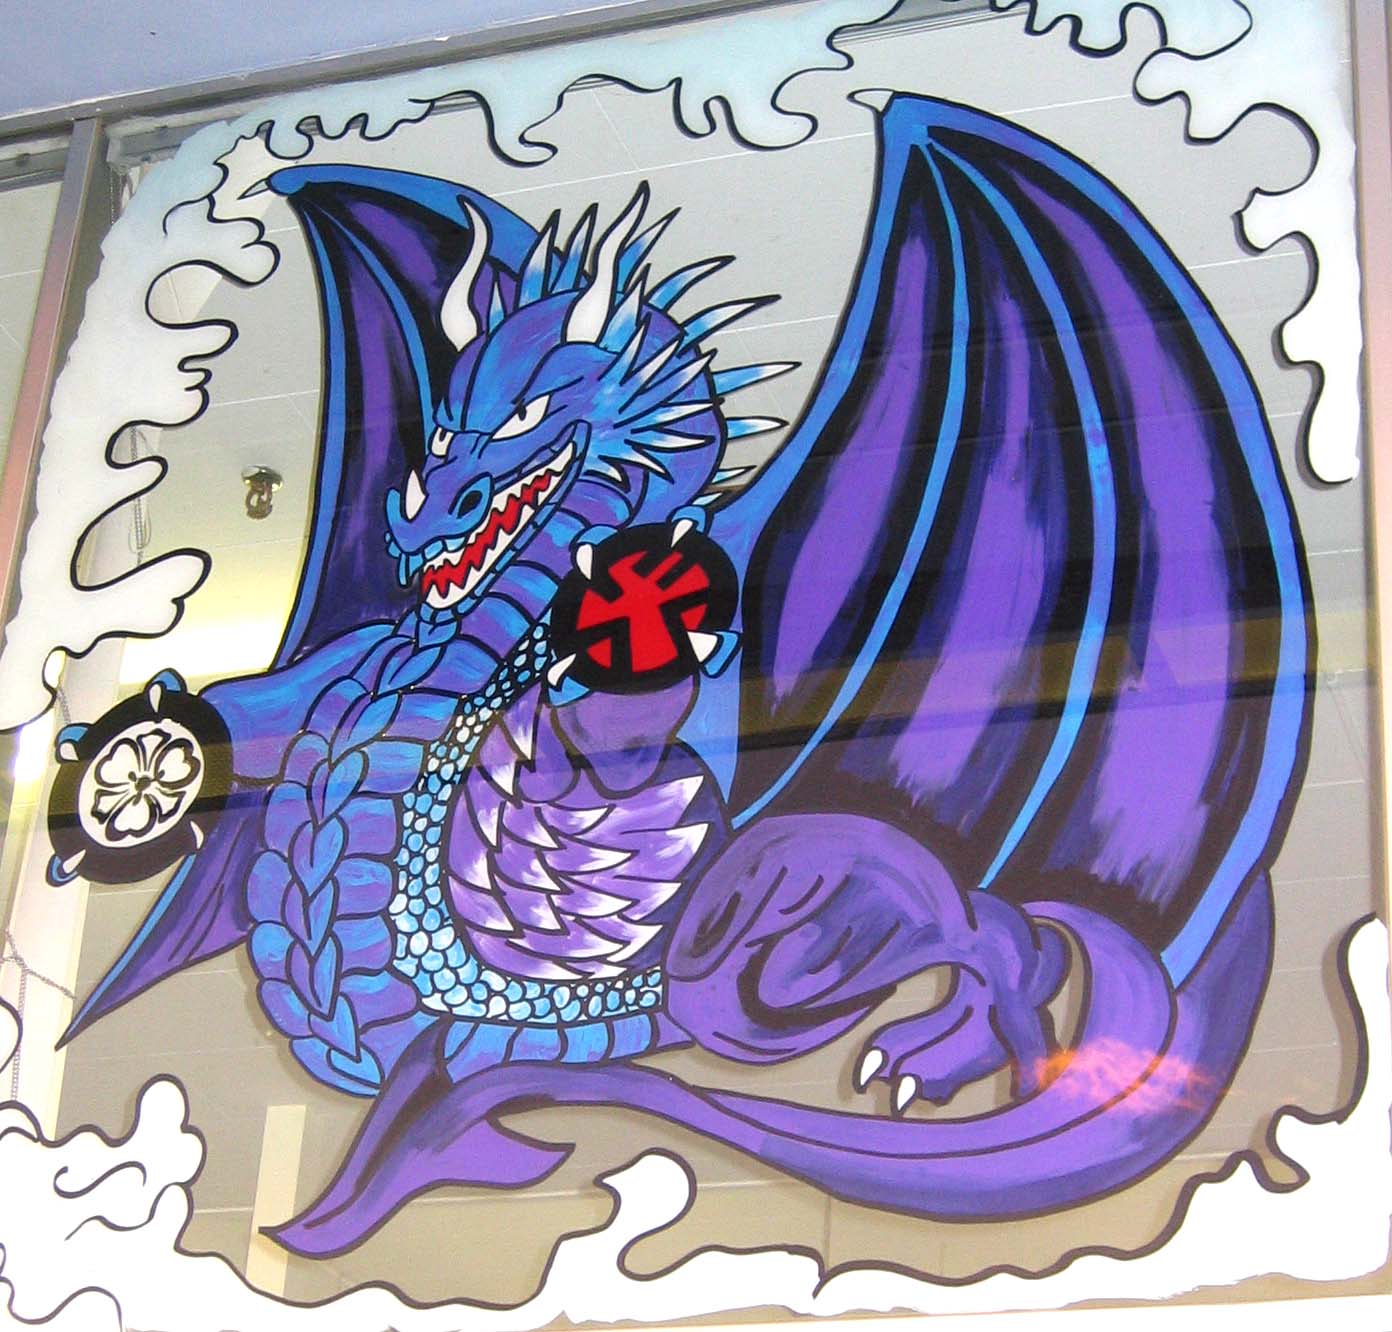 dragon mural